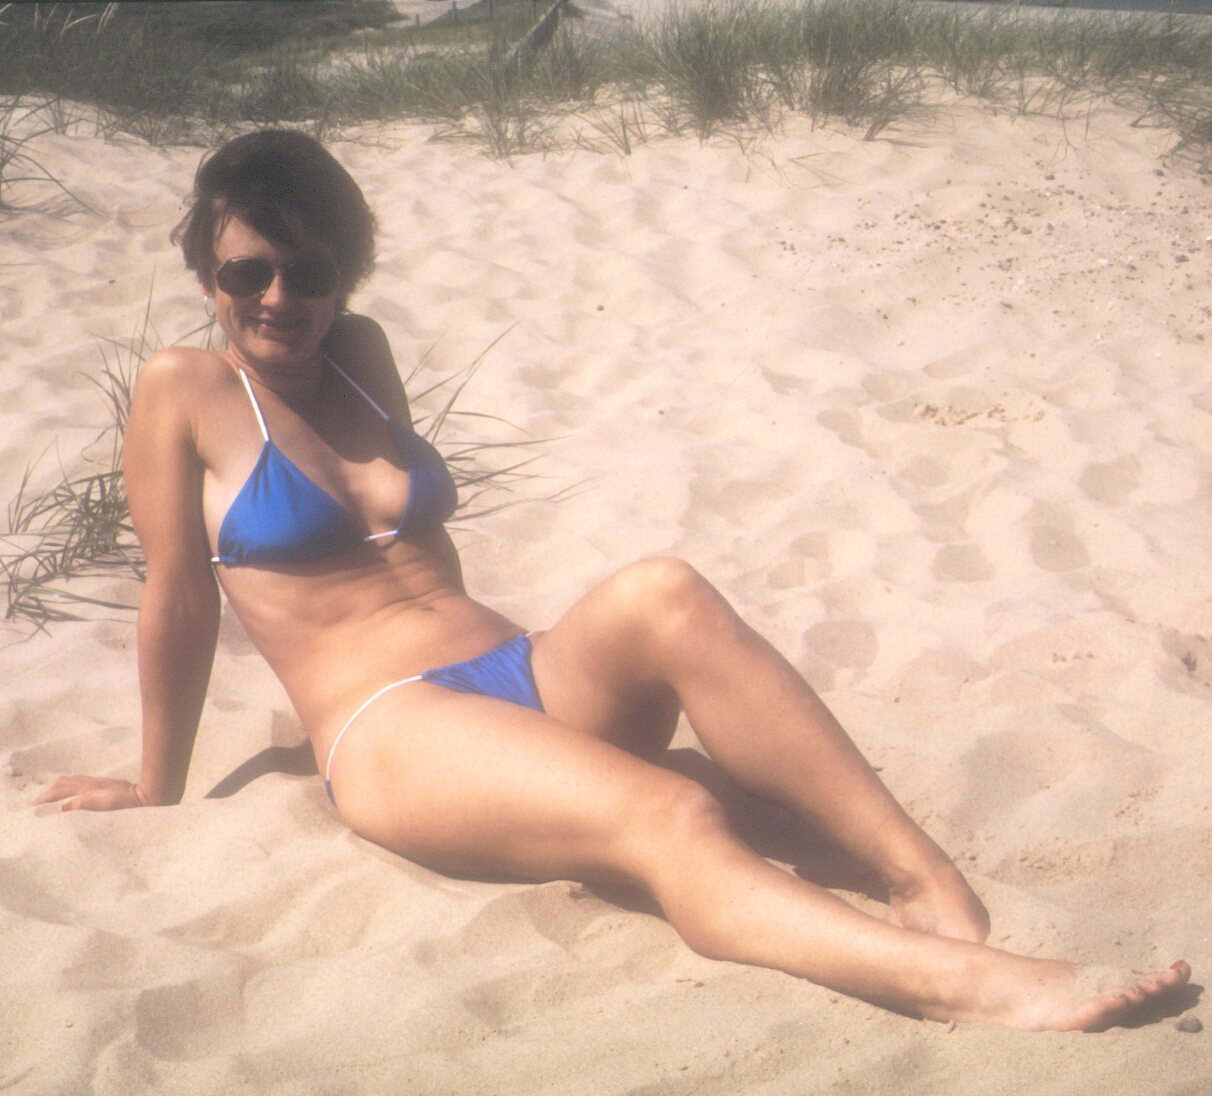 Girl on the beach in bikini